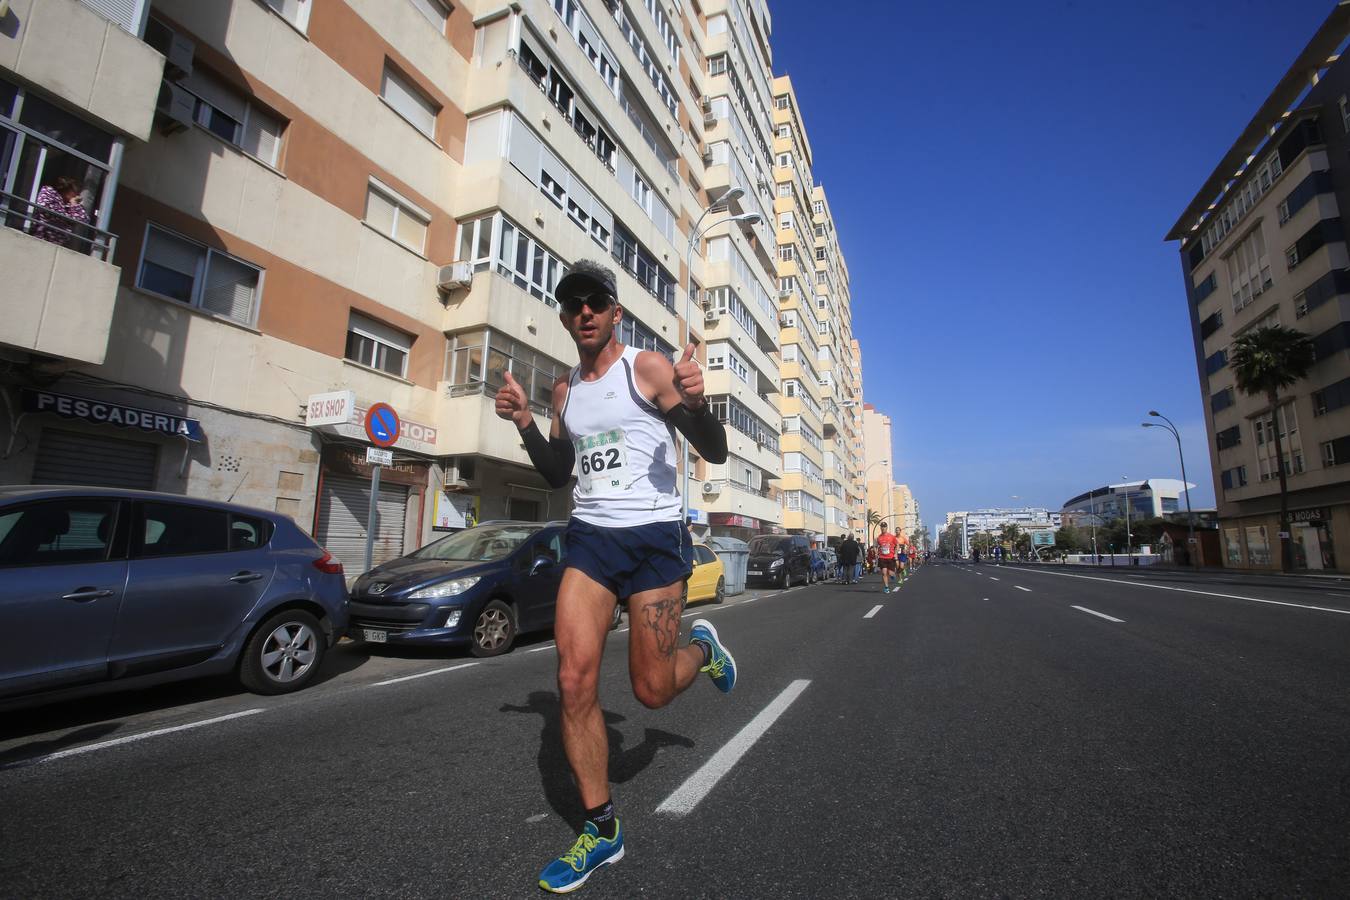 FOTOS: Búscate en la Media Maratón Bahía de Cádiz 2019